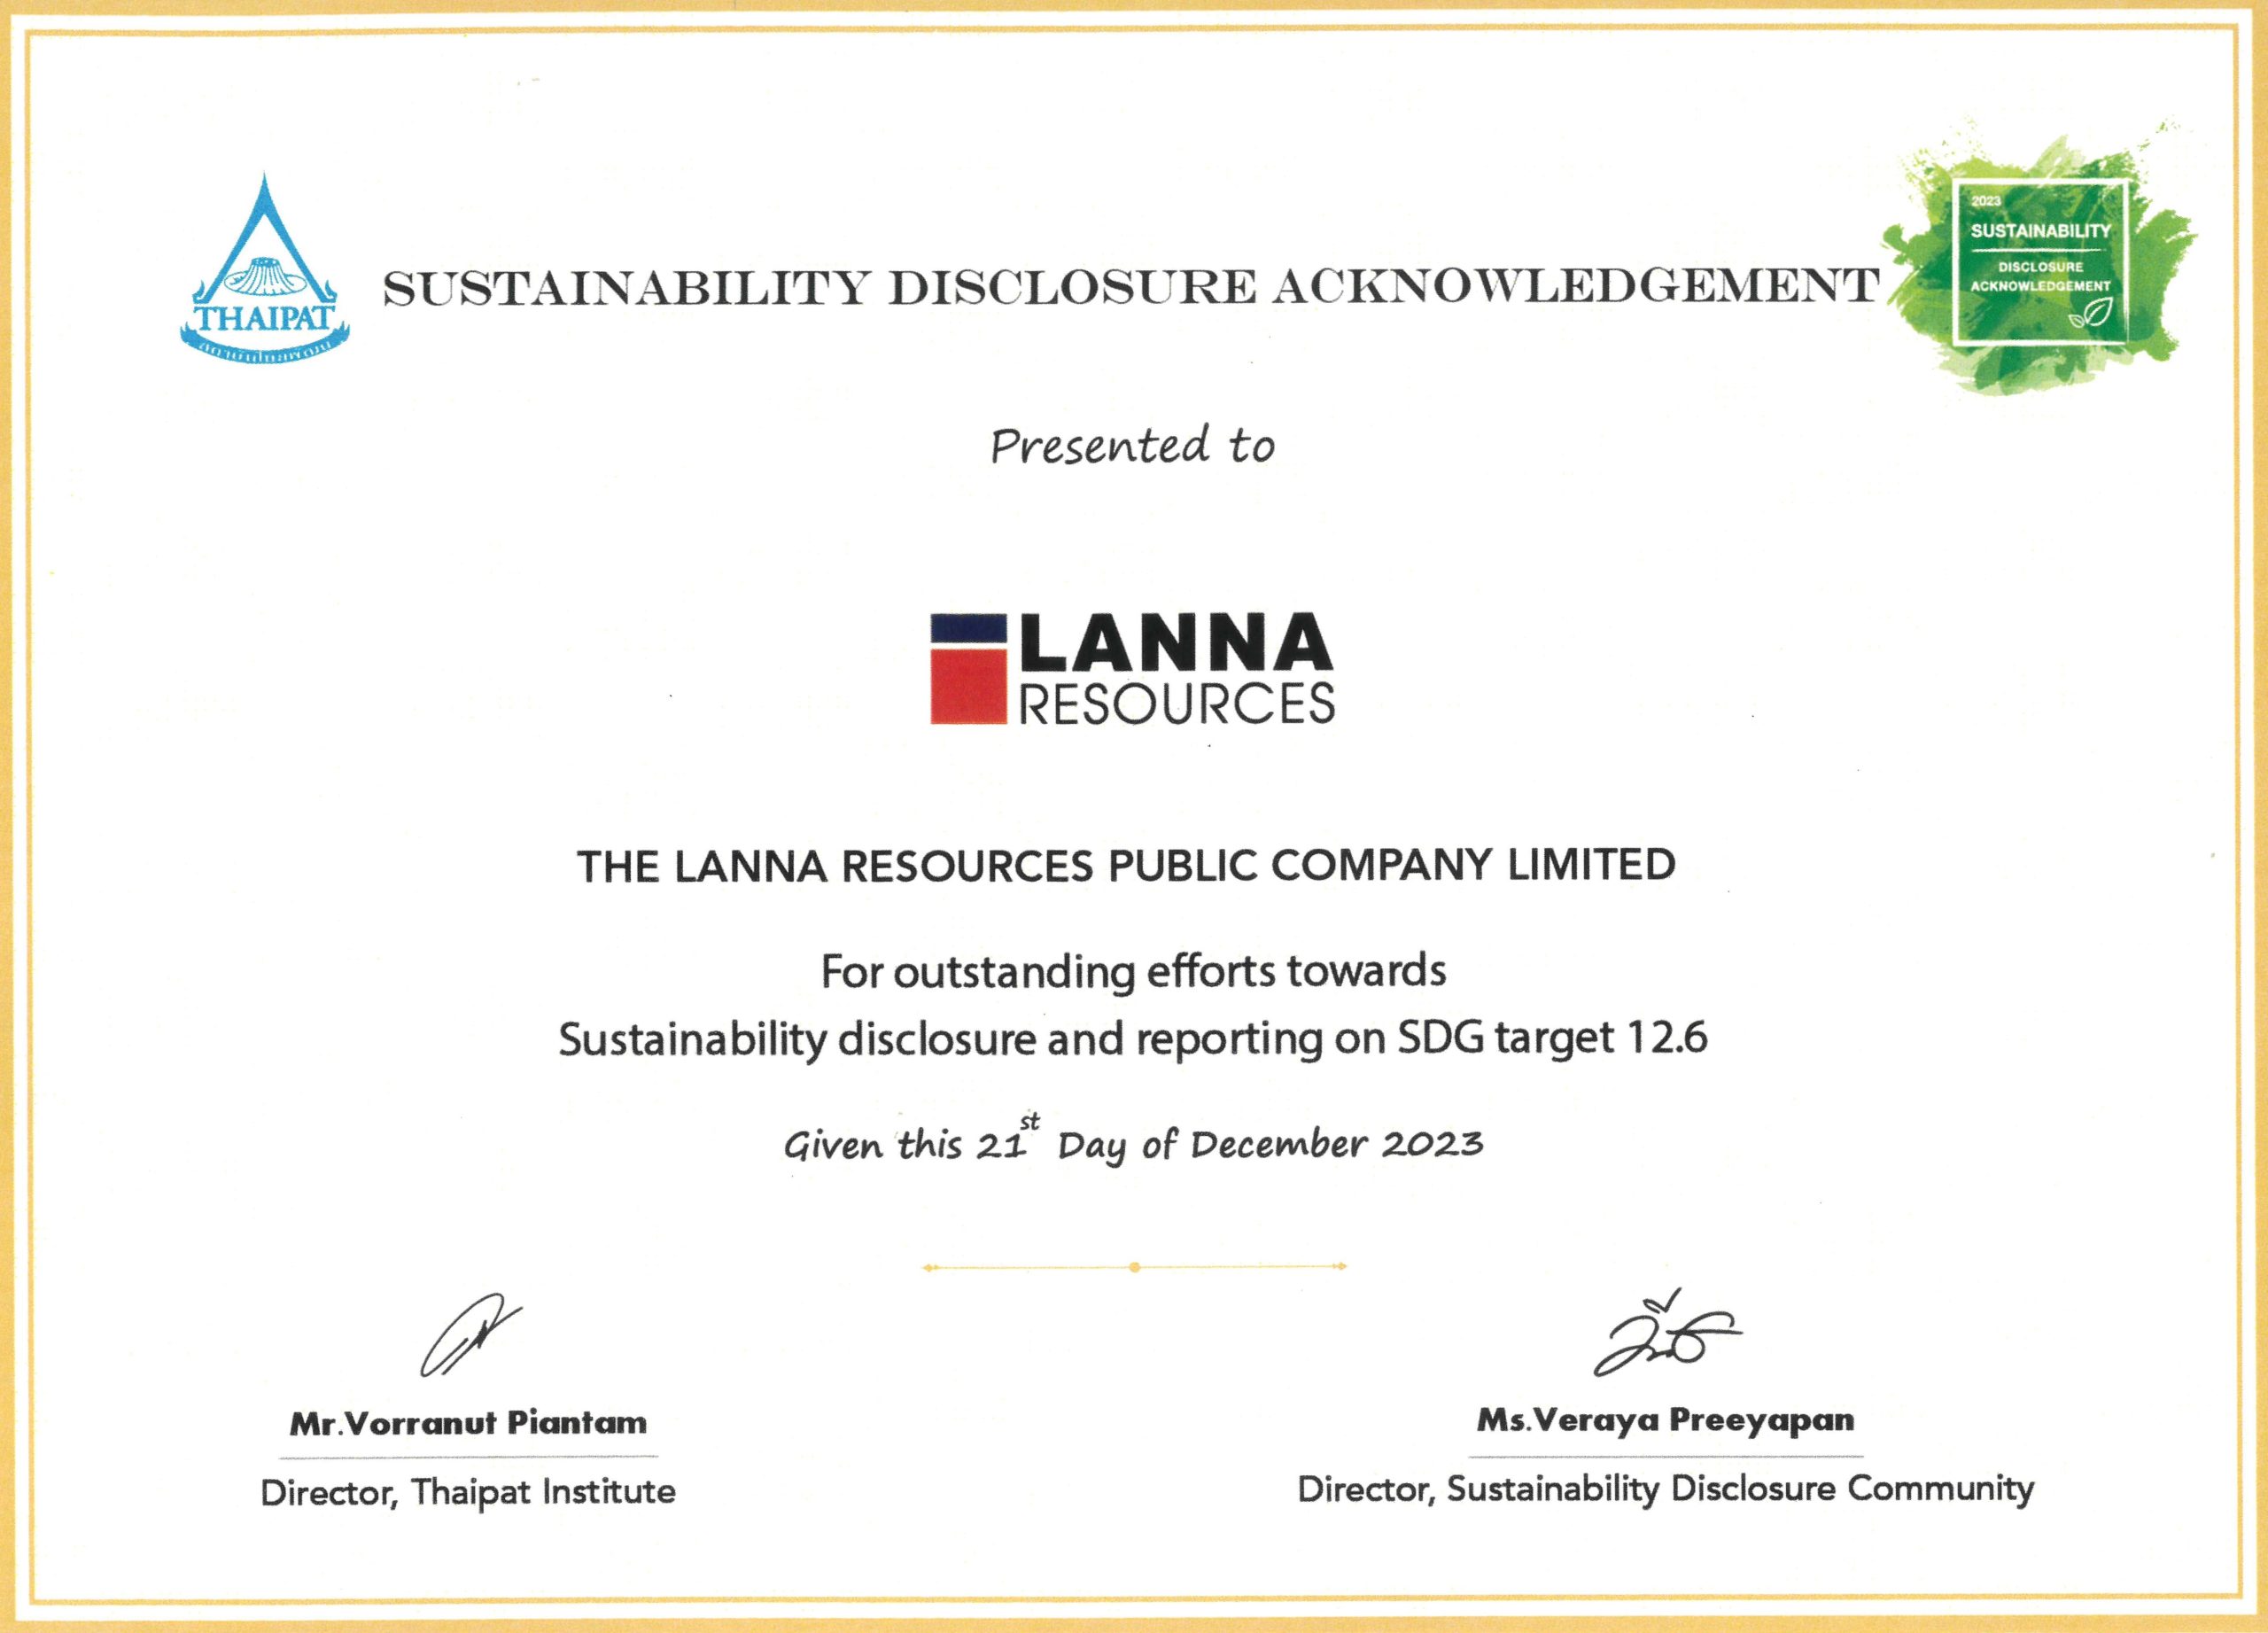 บริษัทฯ ได้รับรางวัล Sustainability Disclosure Acknowledgement ปี 2566 (ปีที่ 4)